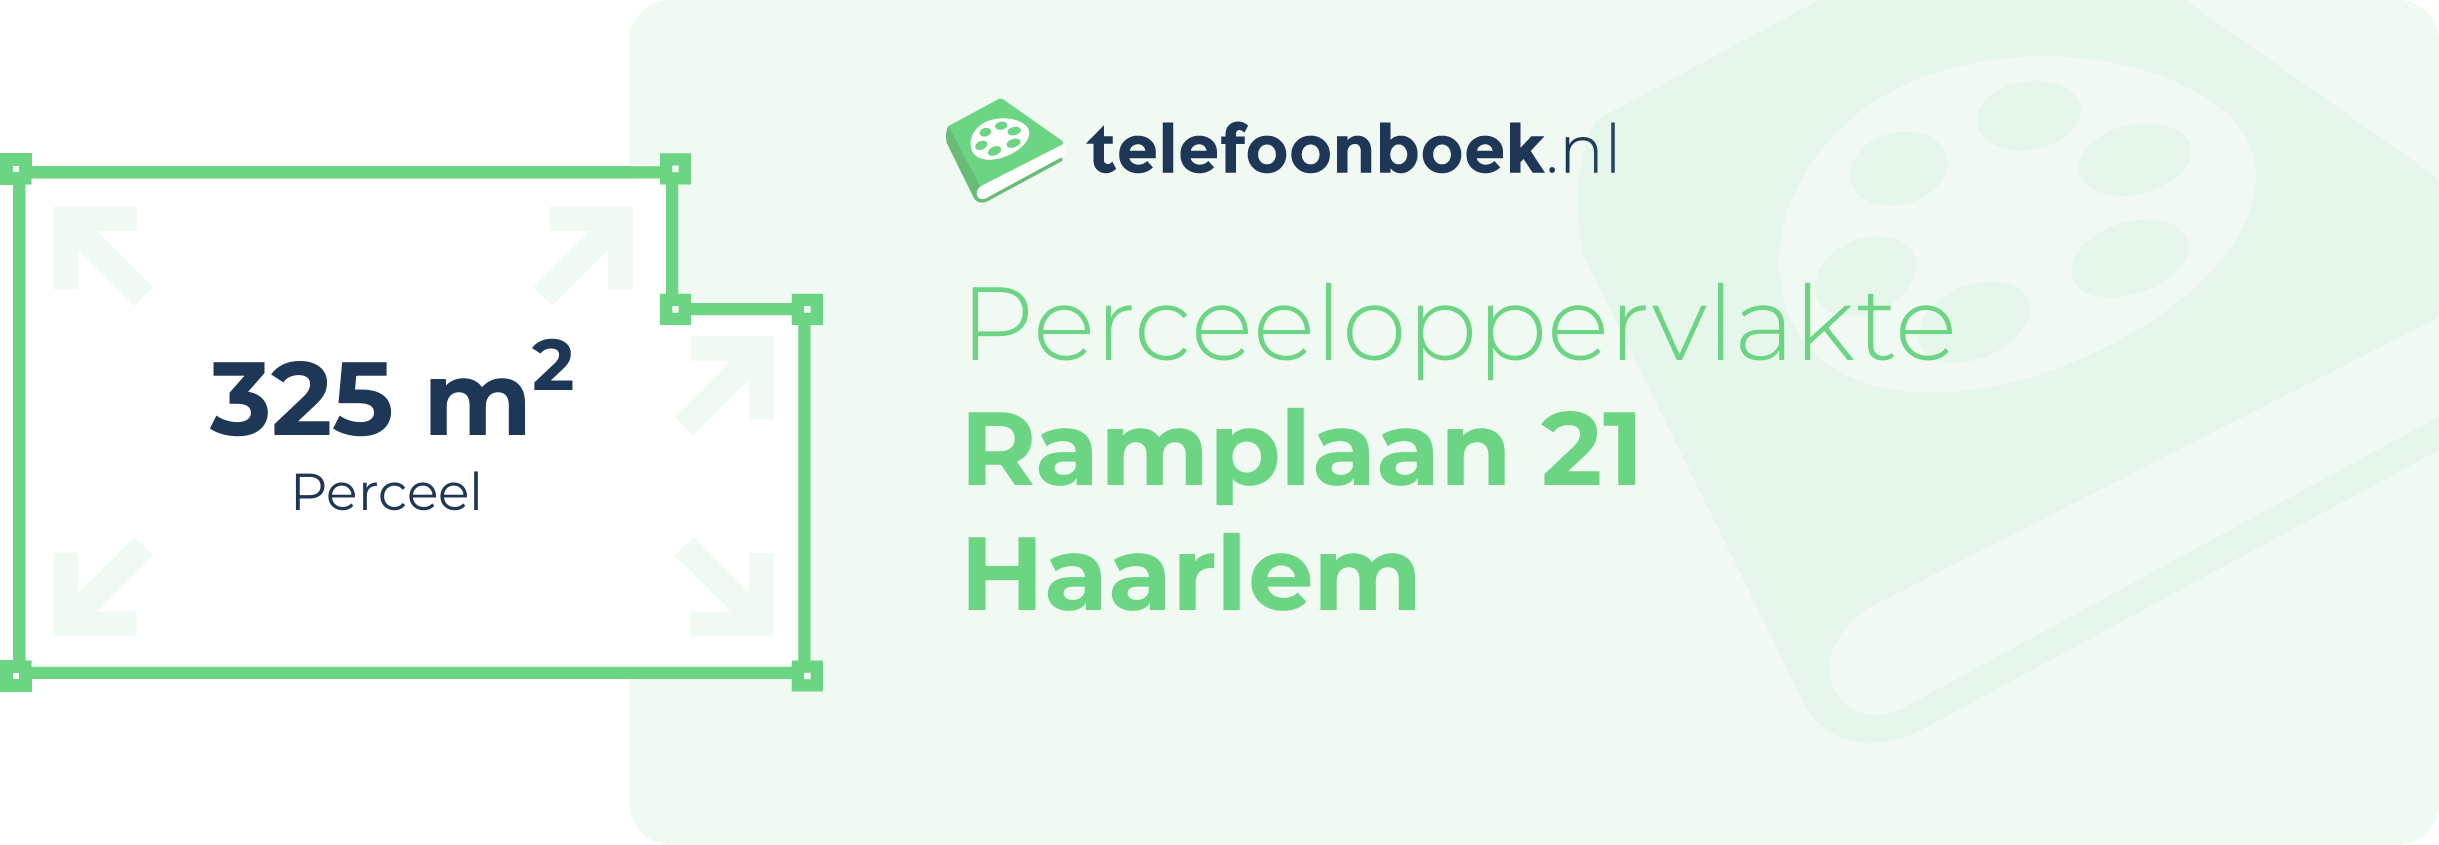 Perceeloppervlakte Ramplaan 21 Haarlem